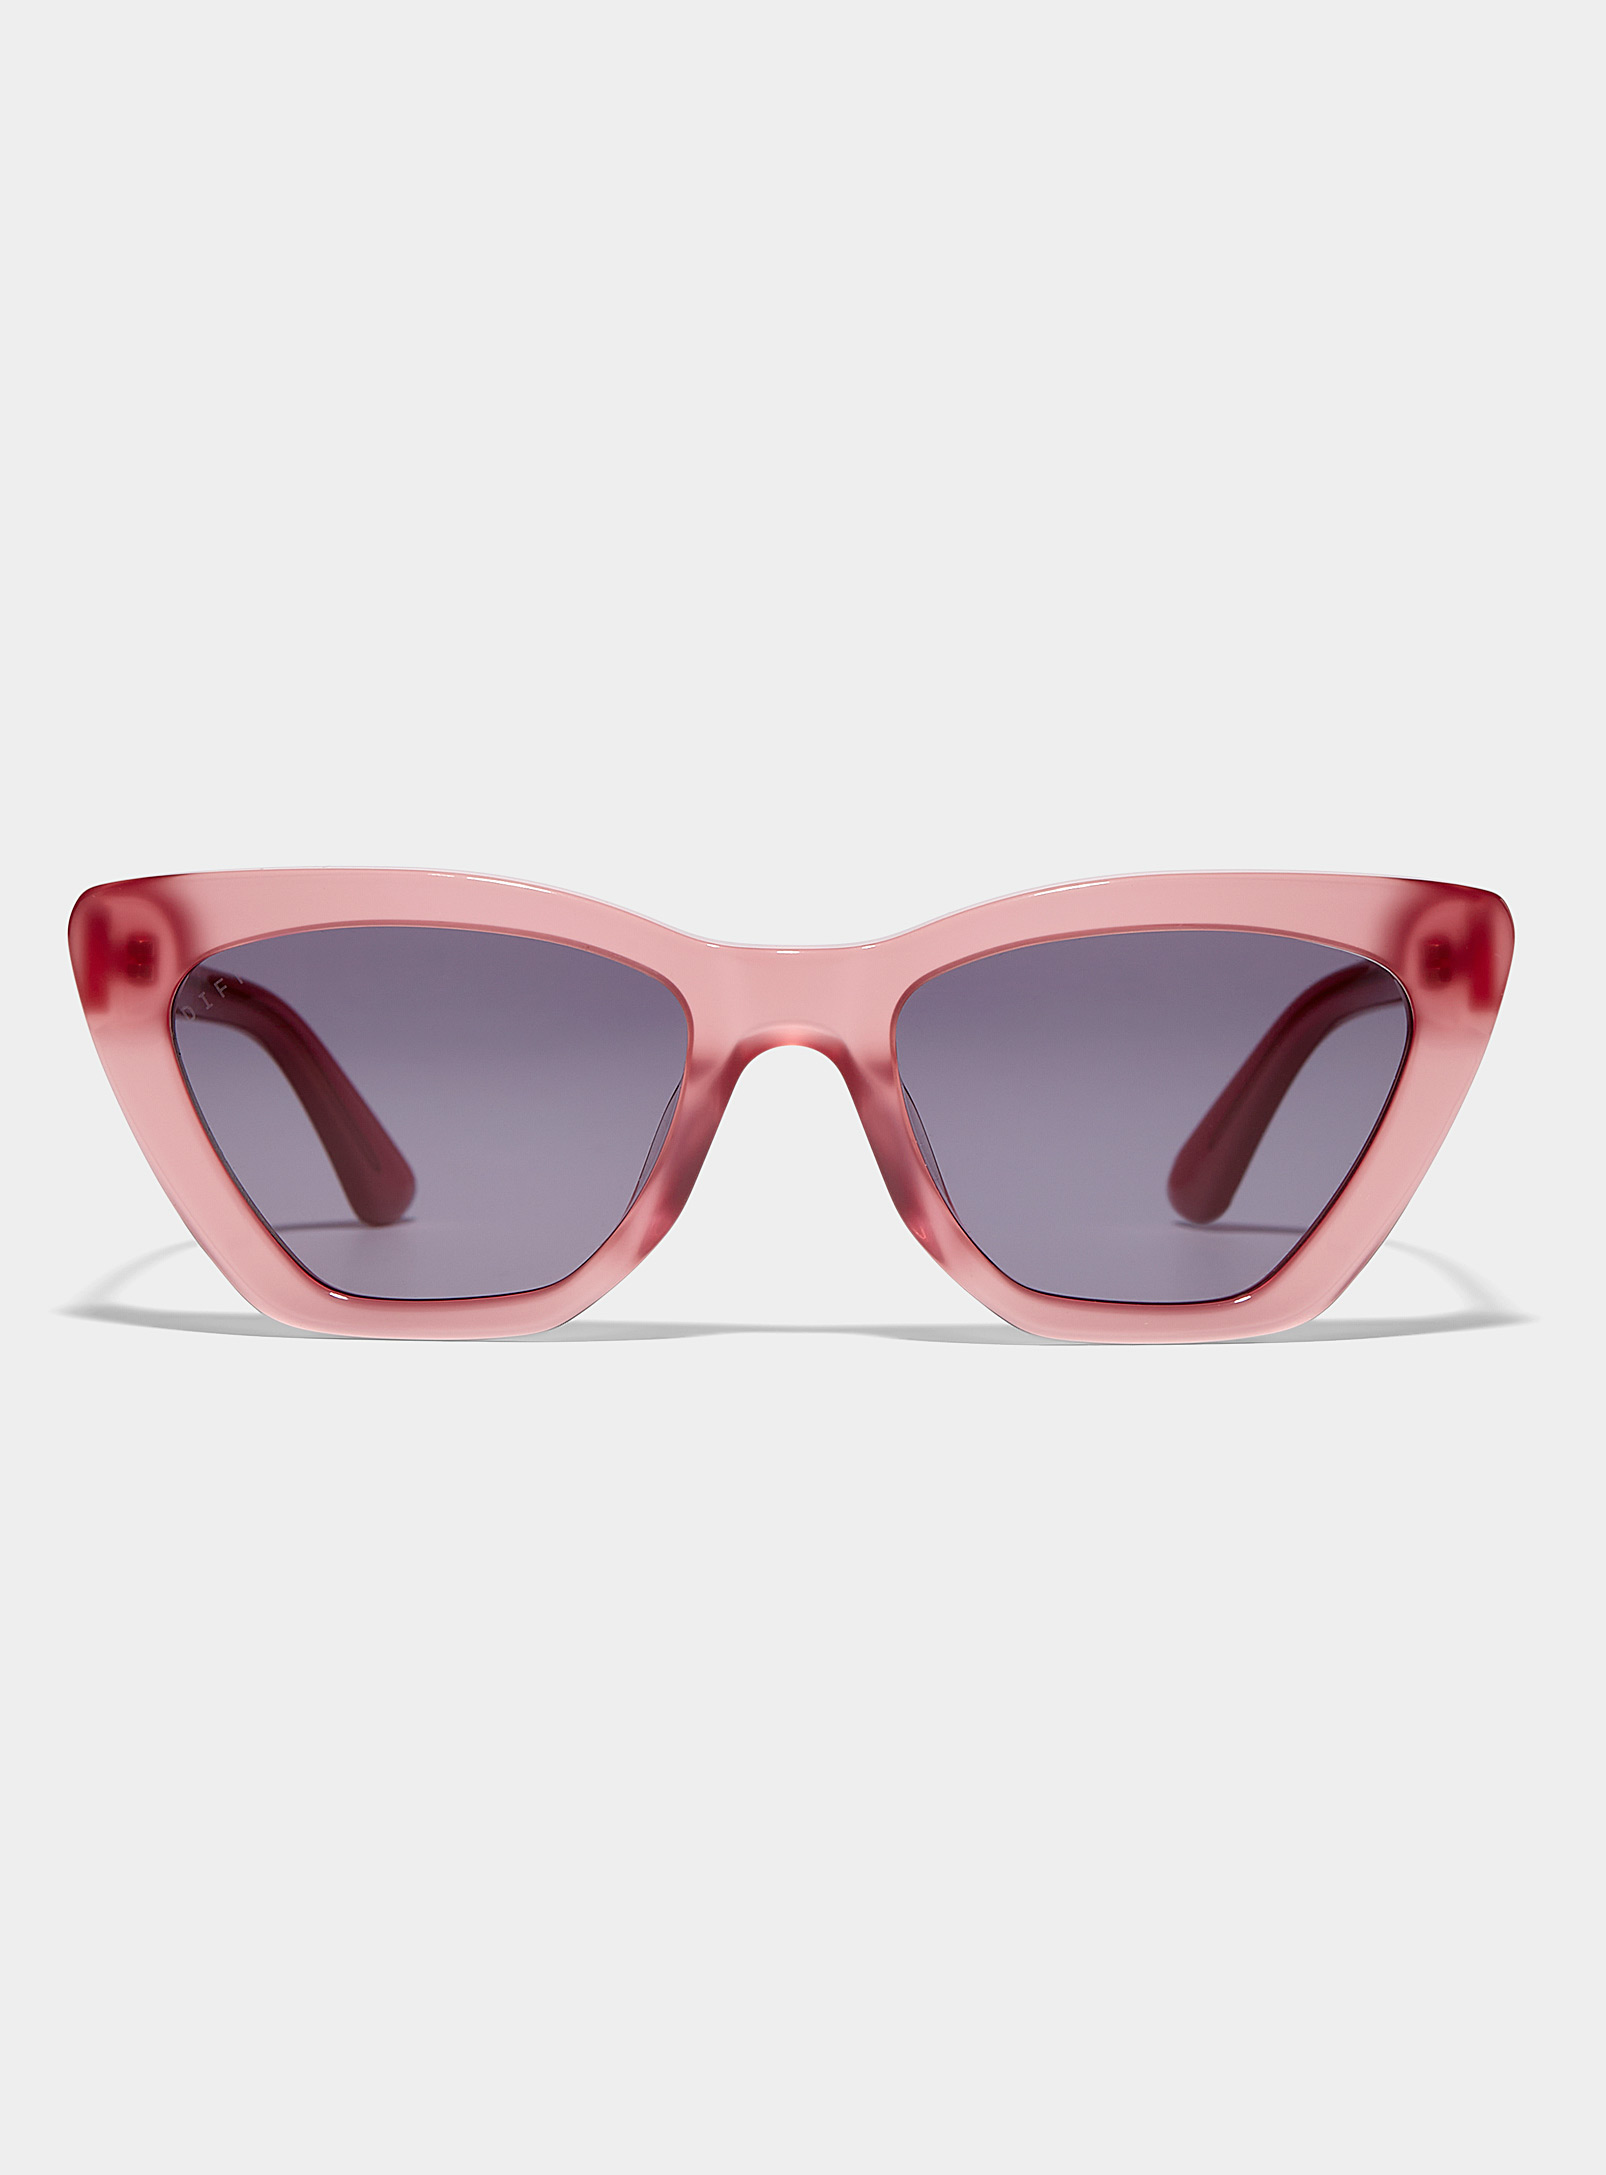 Diff Camila Rectangular Sunglasses In Pink